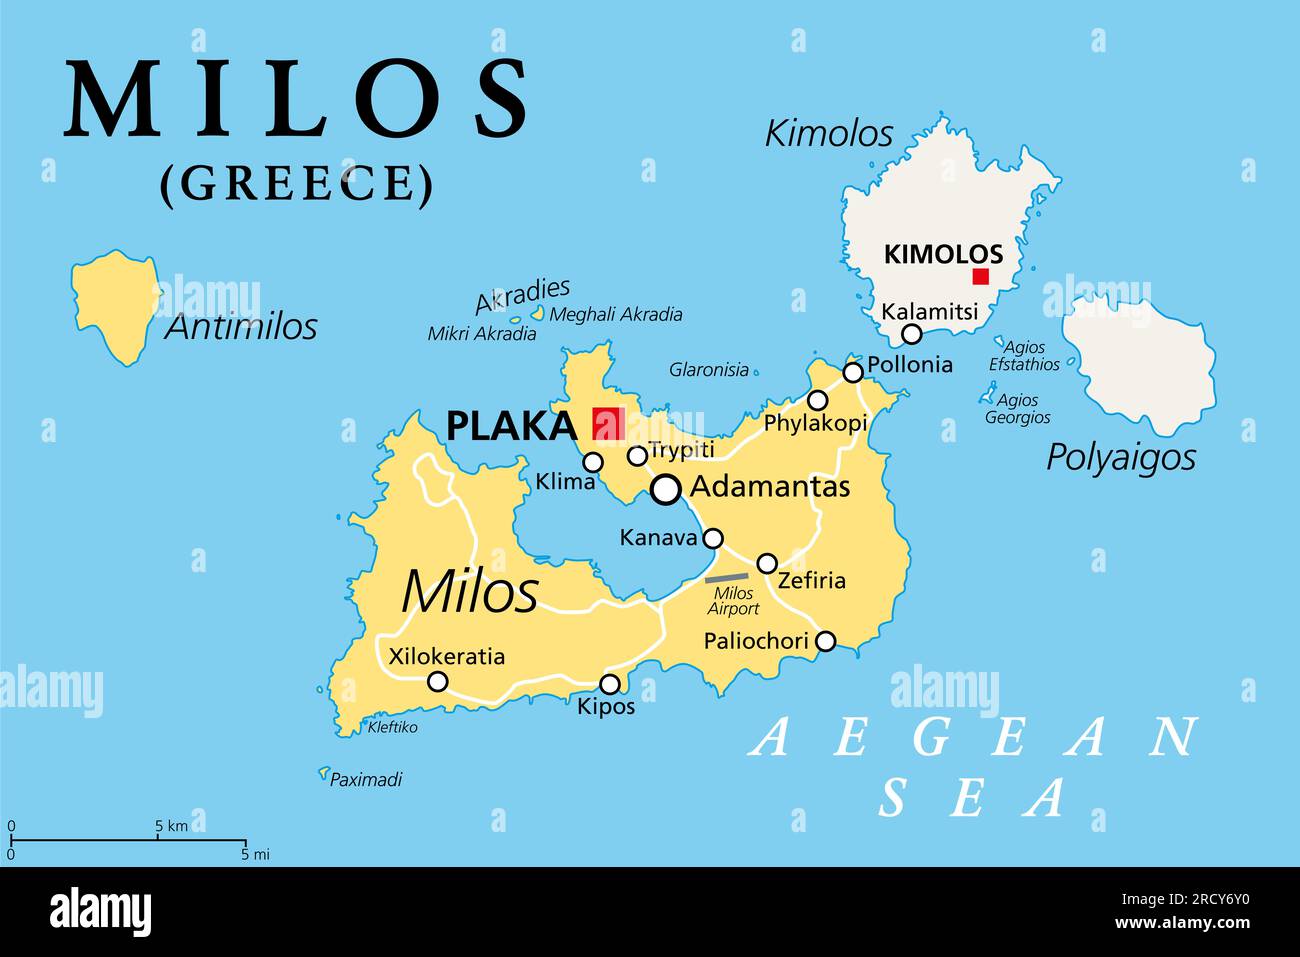 Milos, île de Grèce, carte politique. Île grecque volcanique dans la mer Égée et une partie des Cyclades. Avec Antimilos, Kimolos et Polyaigos. Banque D'Images